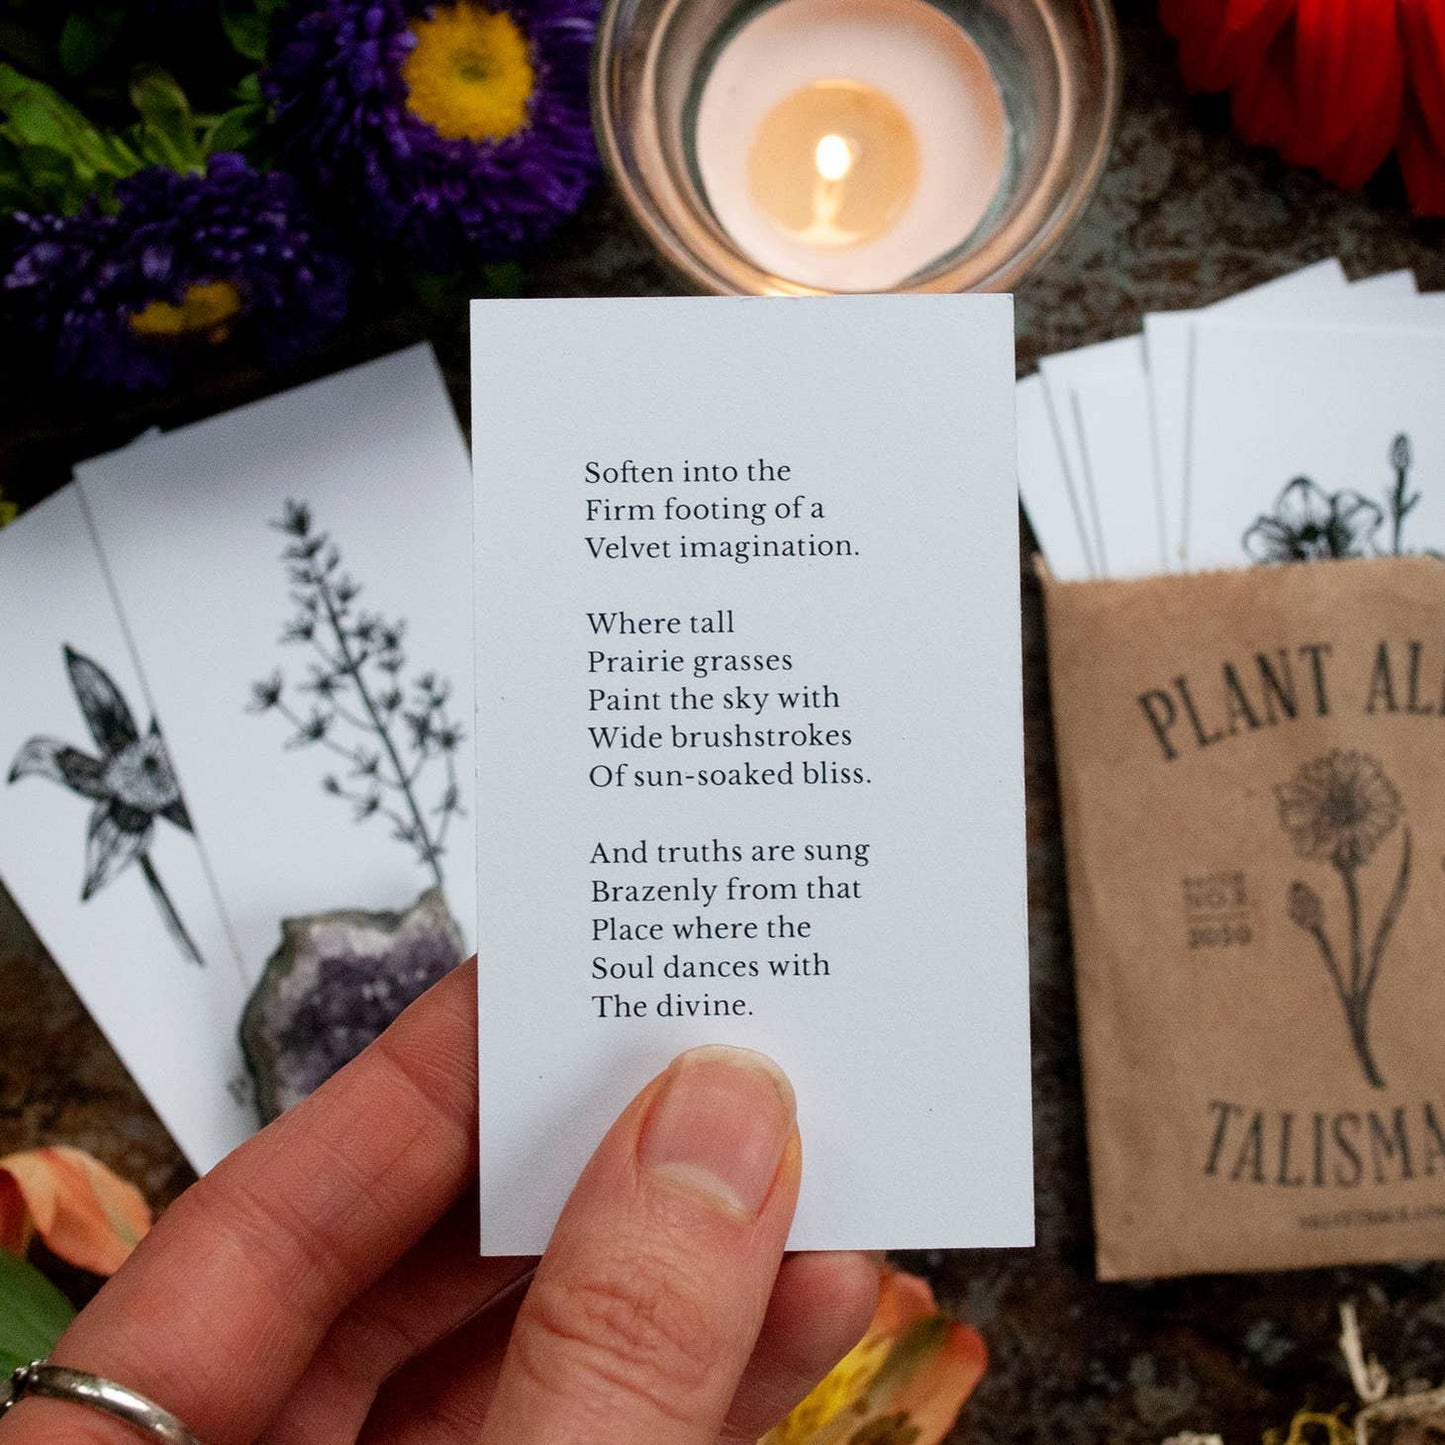 Plant Ally Talisman Cards Vol 3